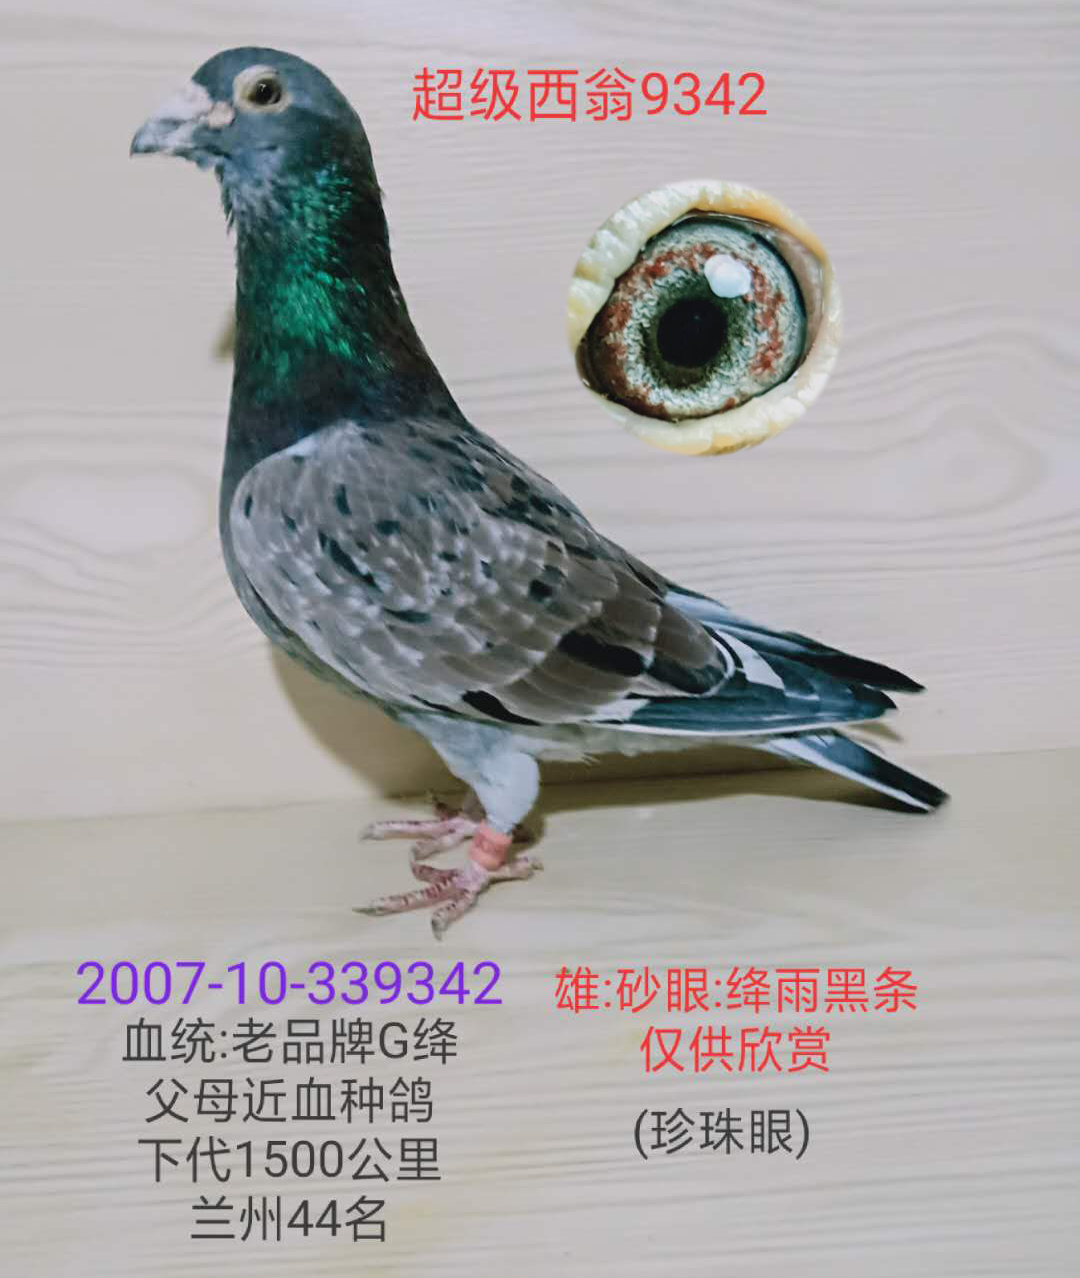 超级西翁9342_龙都赛鸽_ag188.com爱鸽商城_中国信鸽